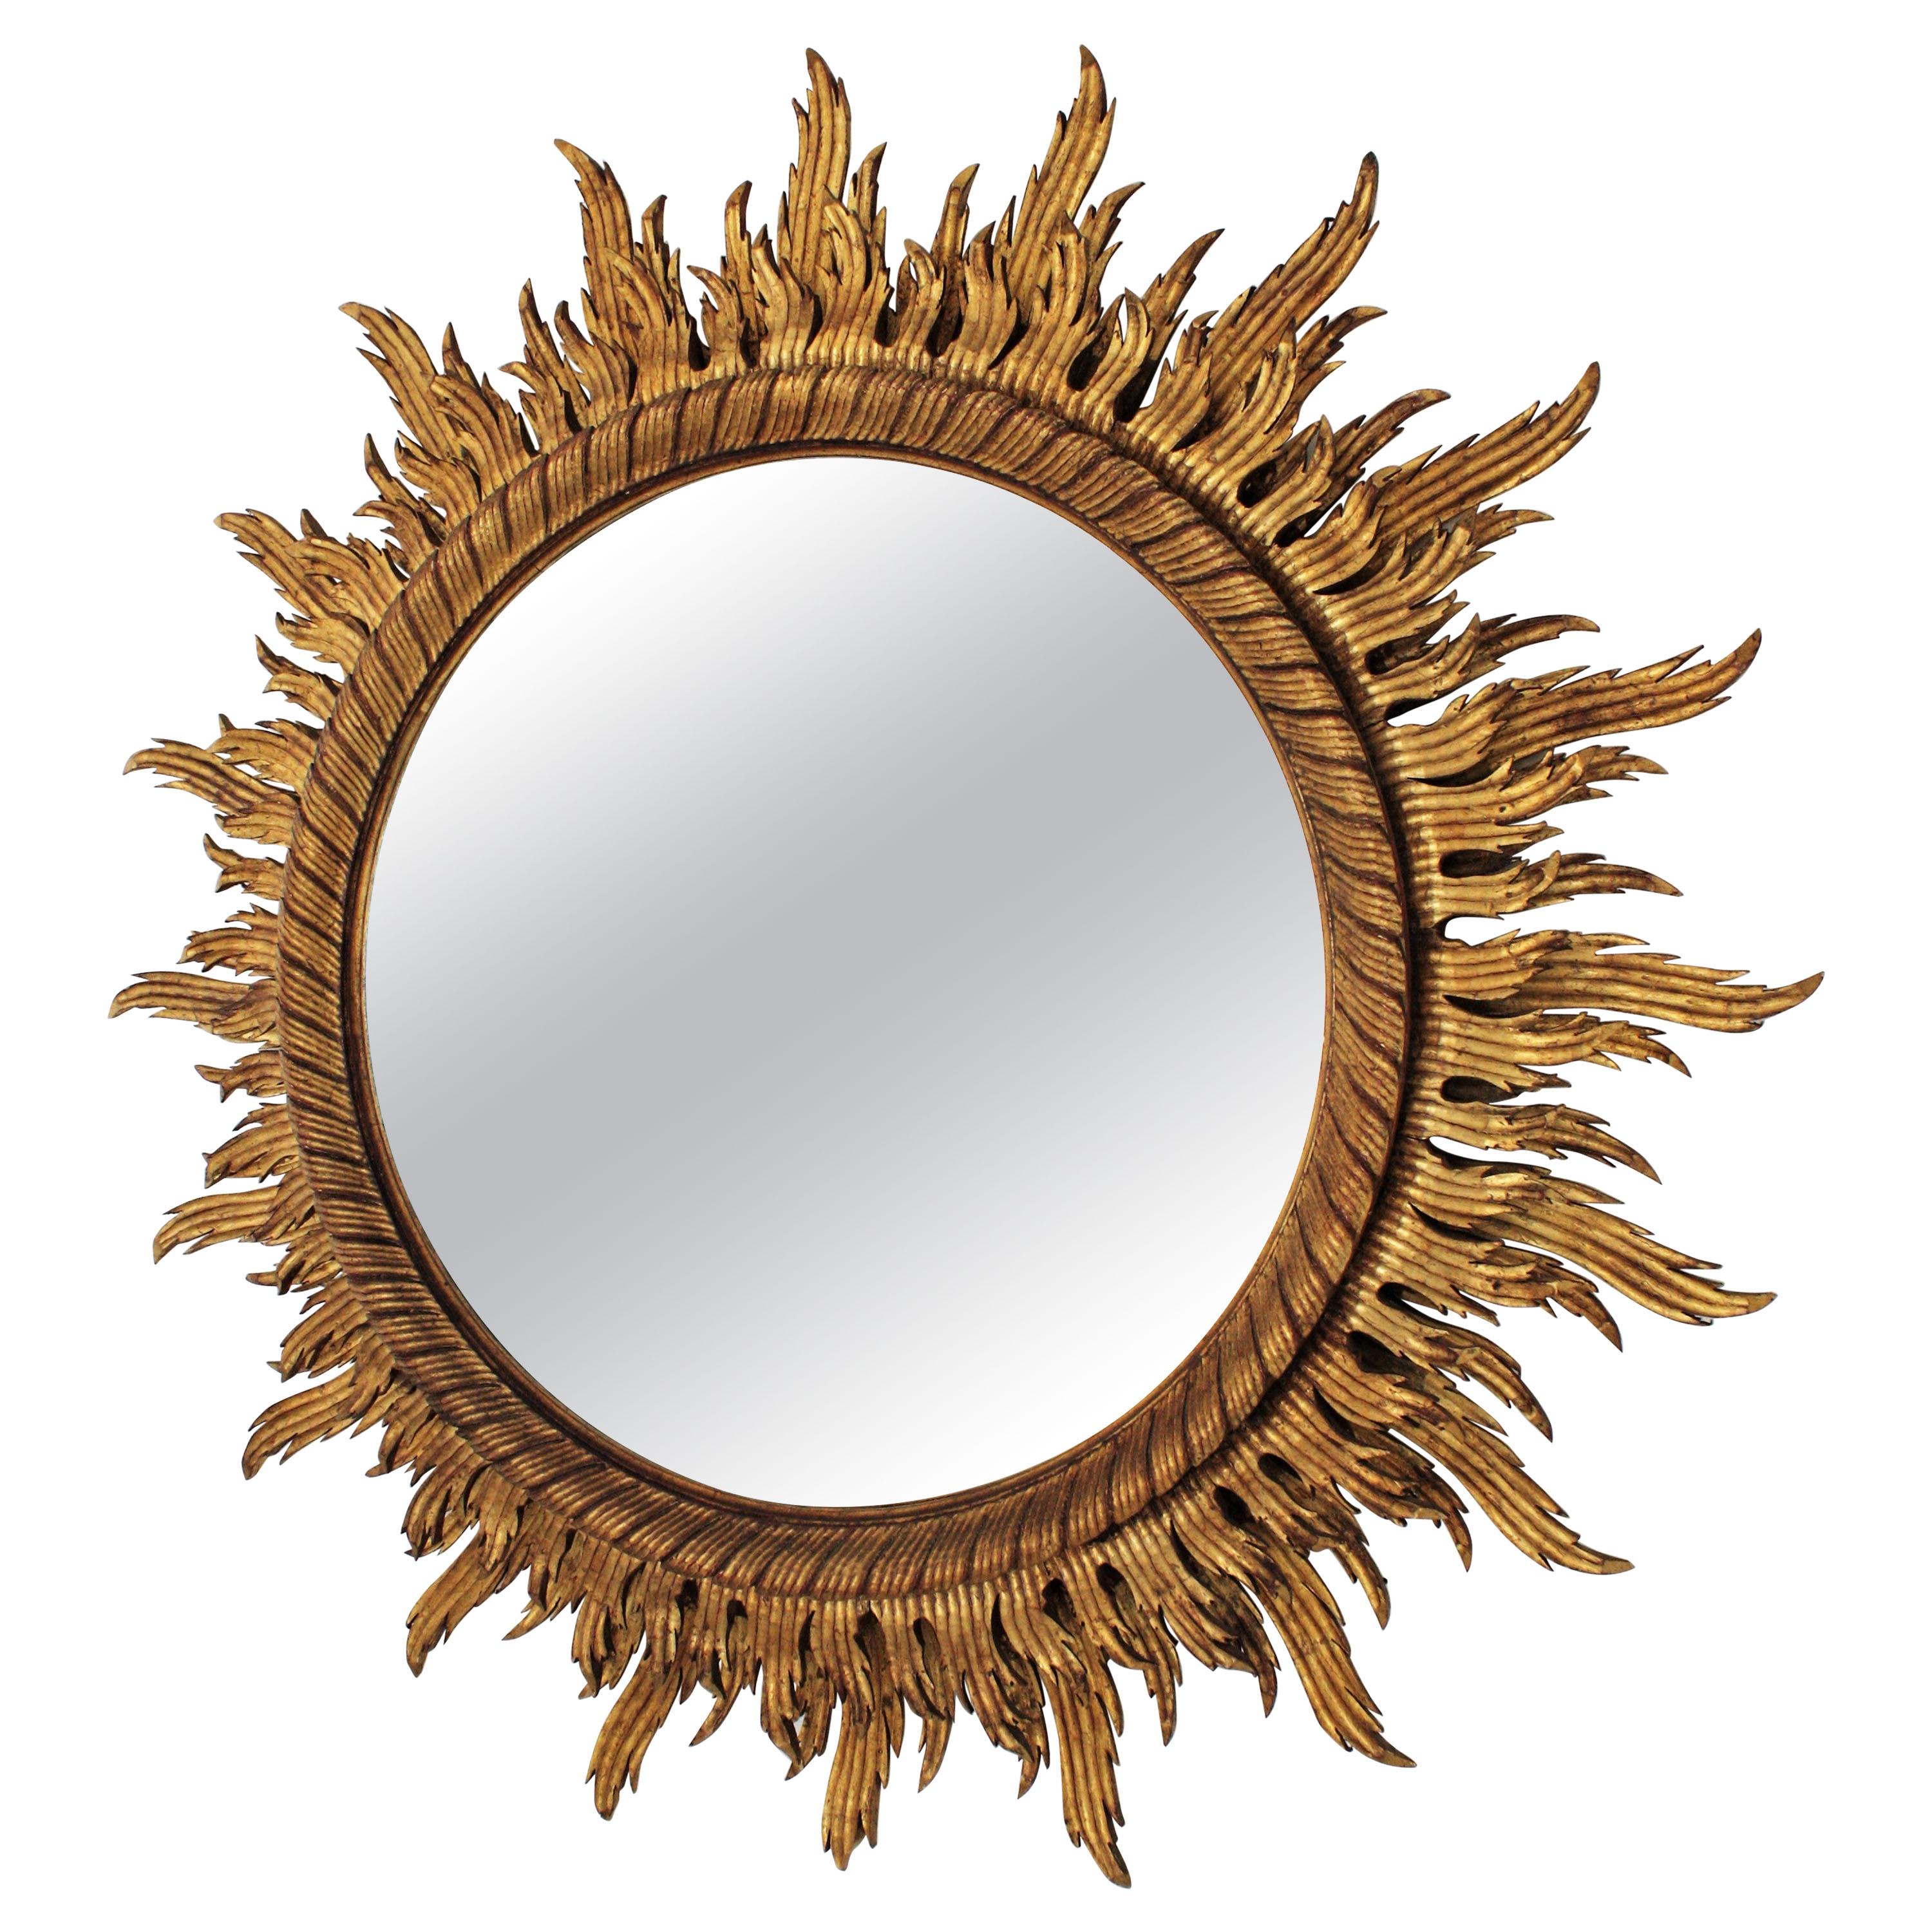 Sunburst Mirror in Large Scale